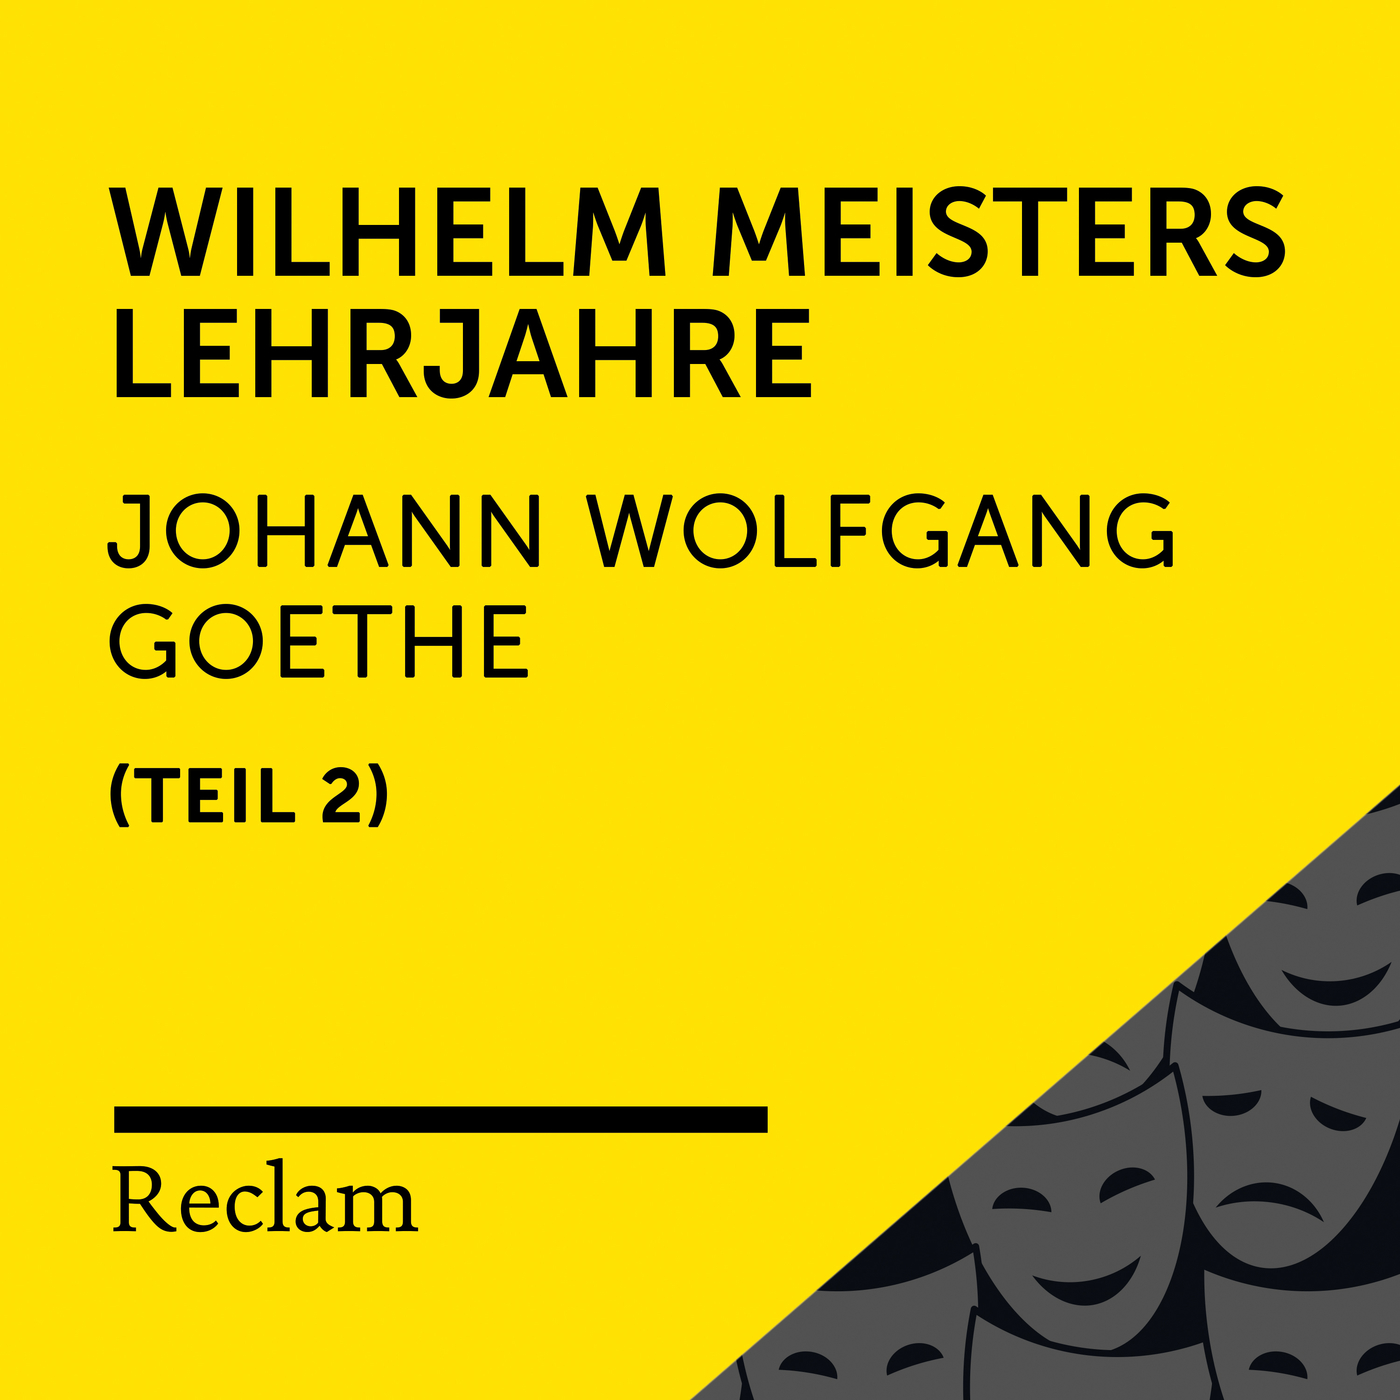 Wilhelm Meisters Lehrjahre, Buch 6 (Kapitel I, Teil 51)